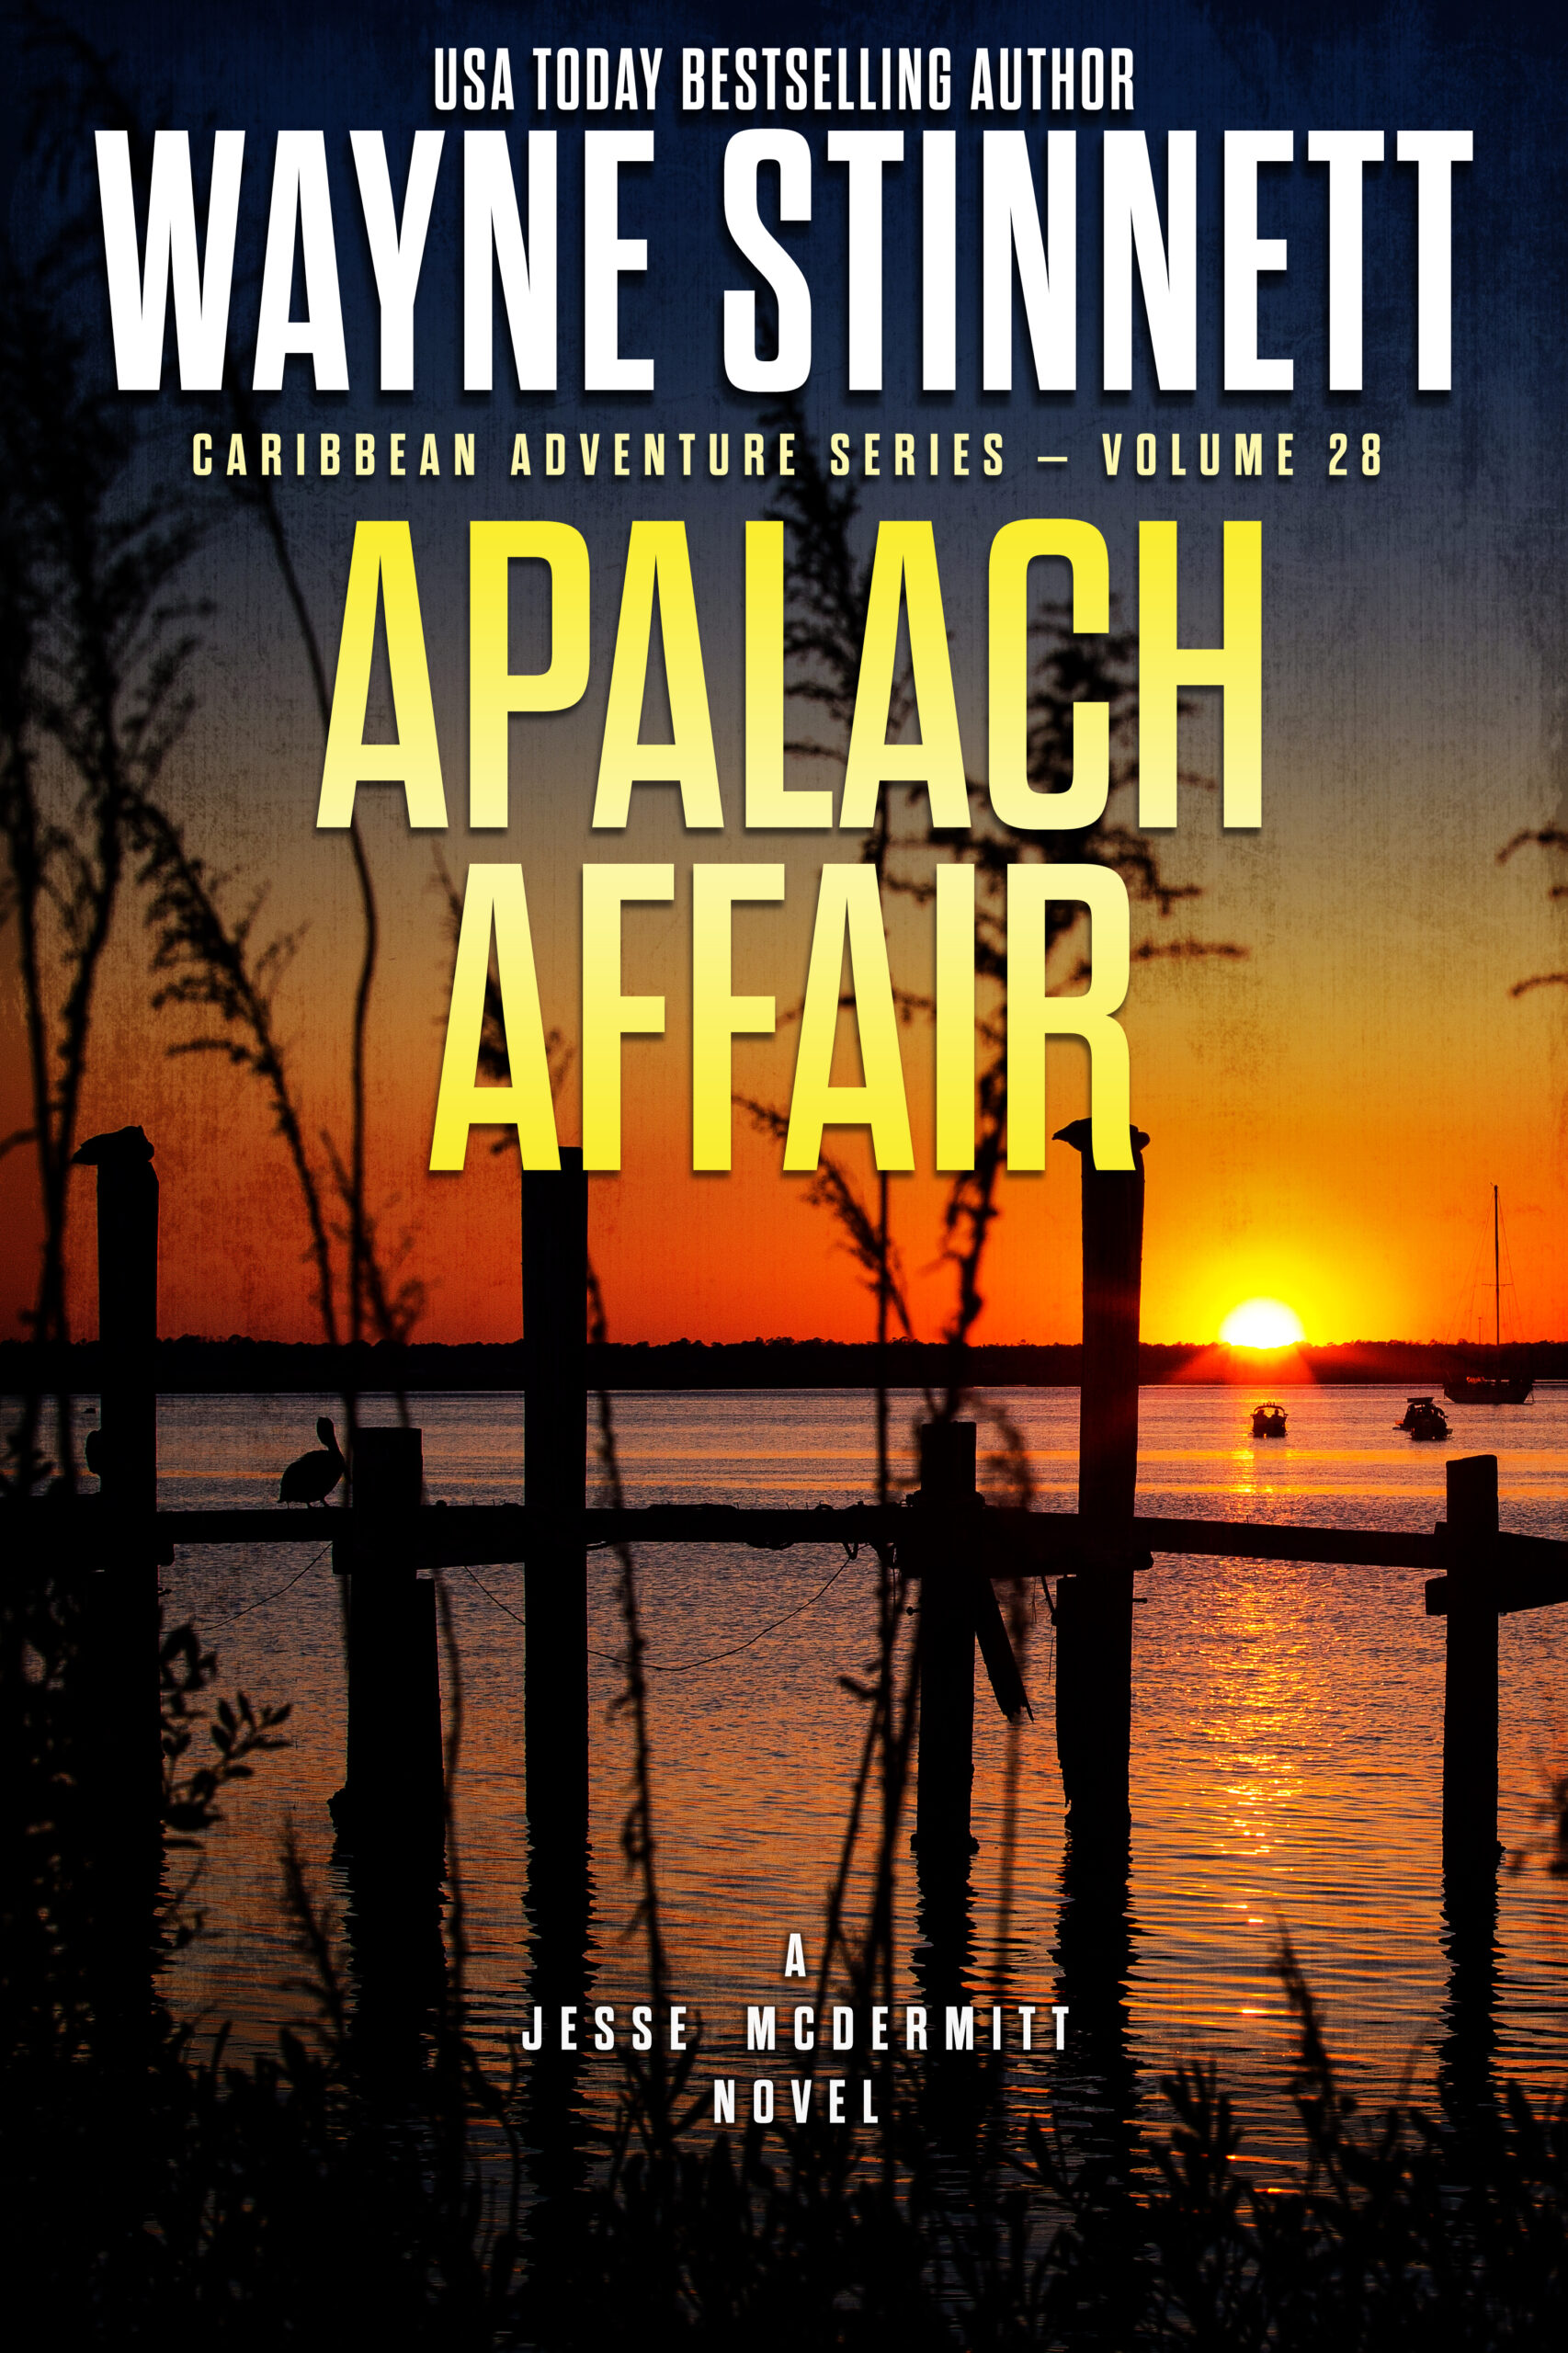 Book Cover of Apalach Affair by Wayne Stinnett